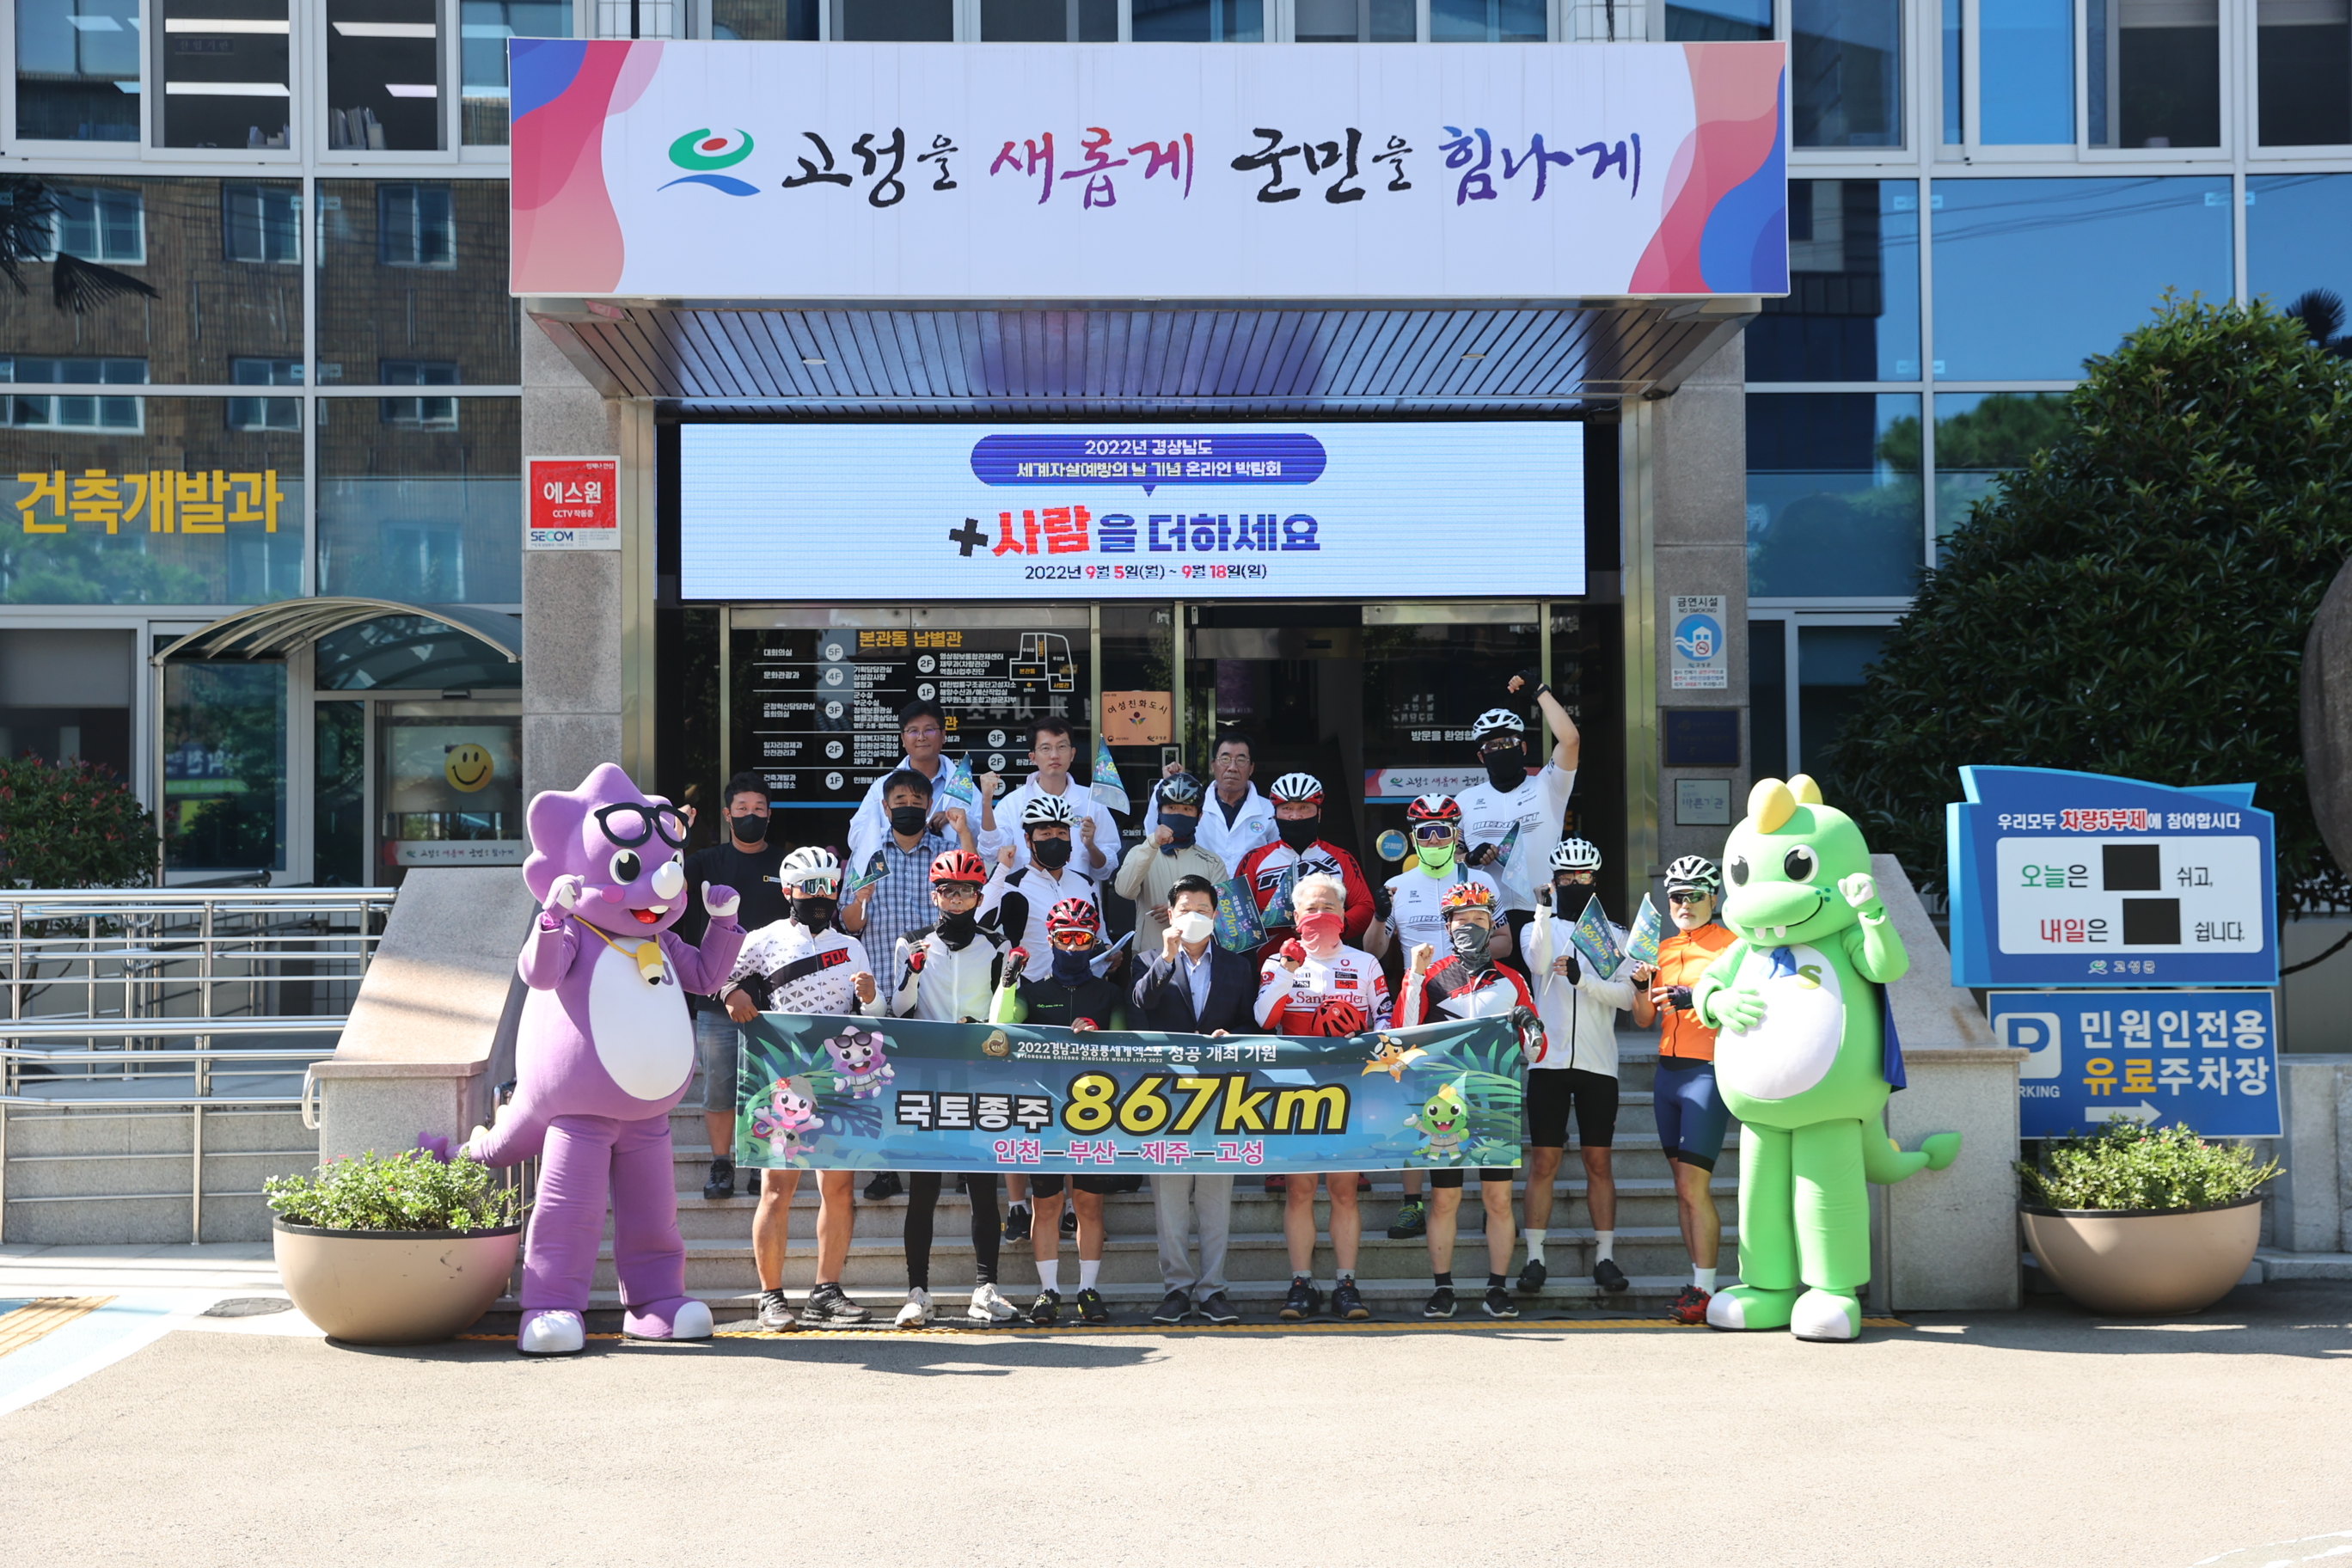 9월7일 고성공룡세계엑스포 개최성공기원 국토대장정 관련자료